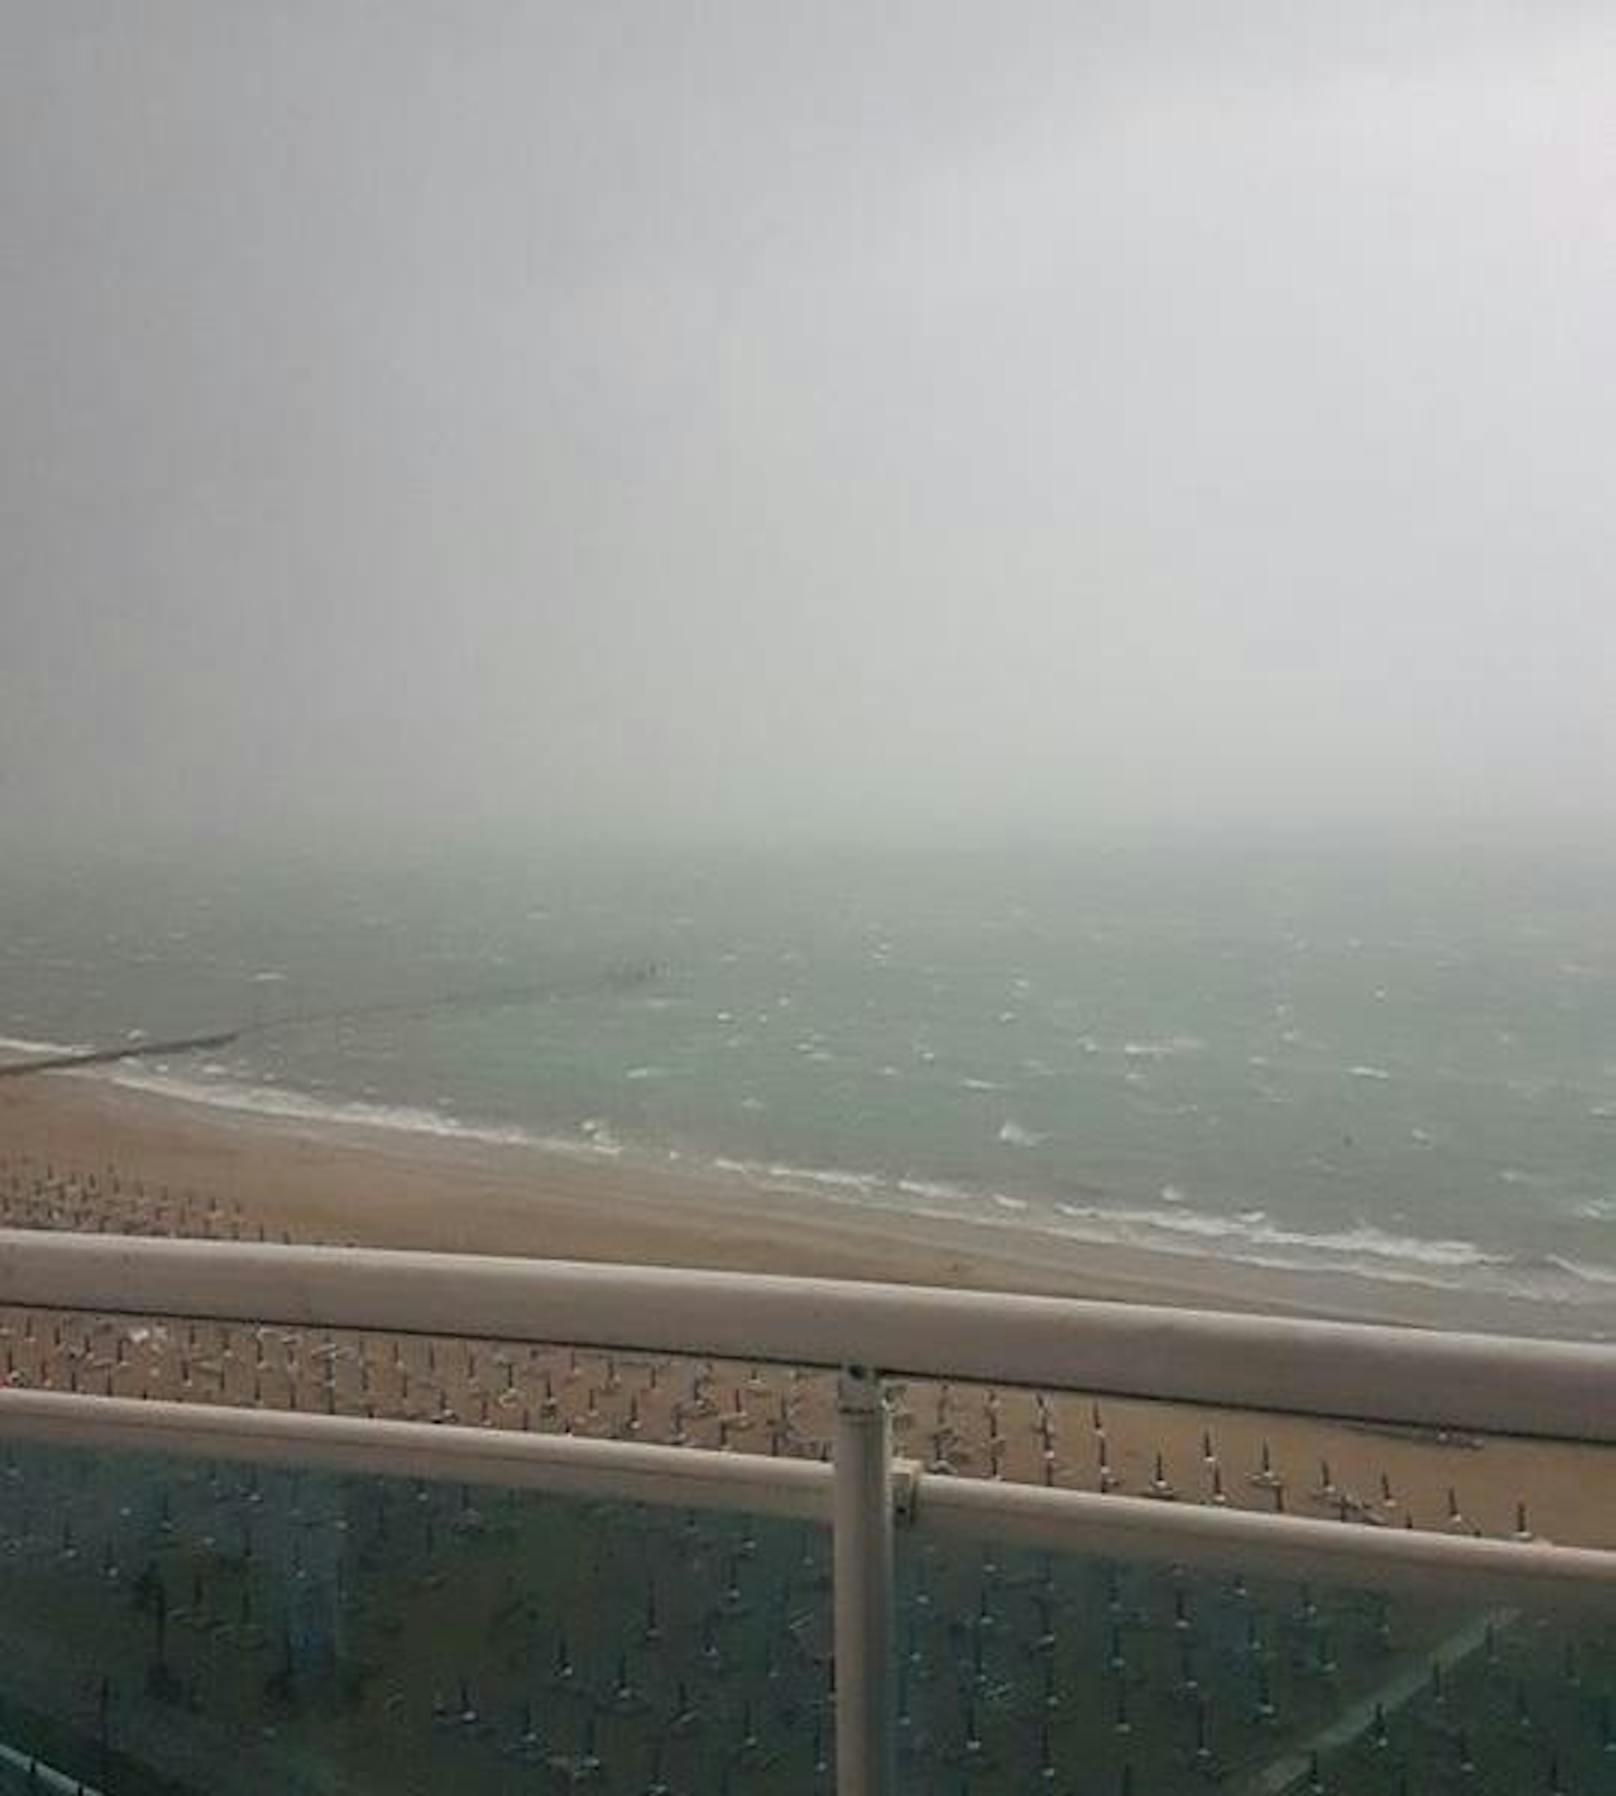 Leserreporter Milan M. fotografierte die Regenwand von seinem Hotelzimmer direkt am Strand von Jesolo aus.